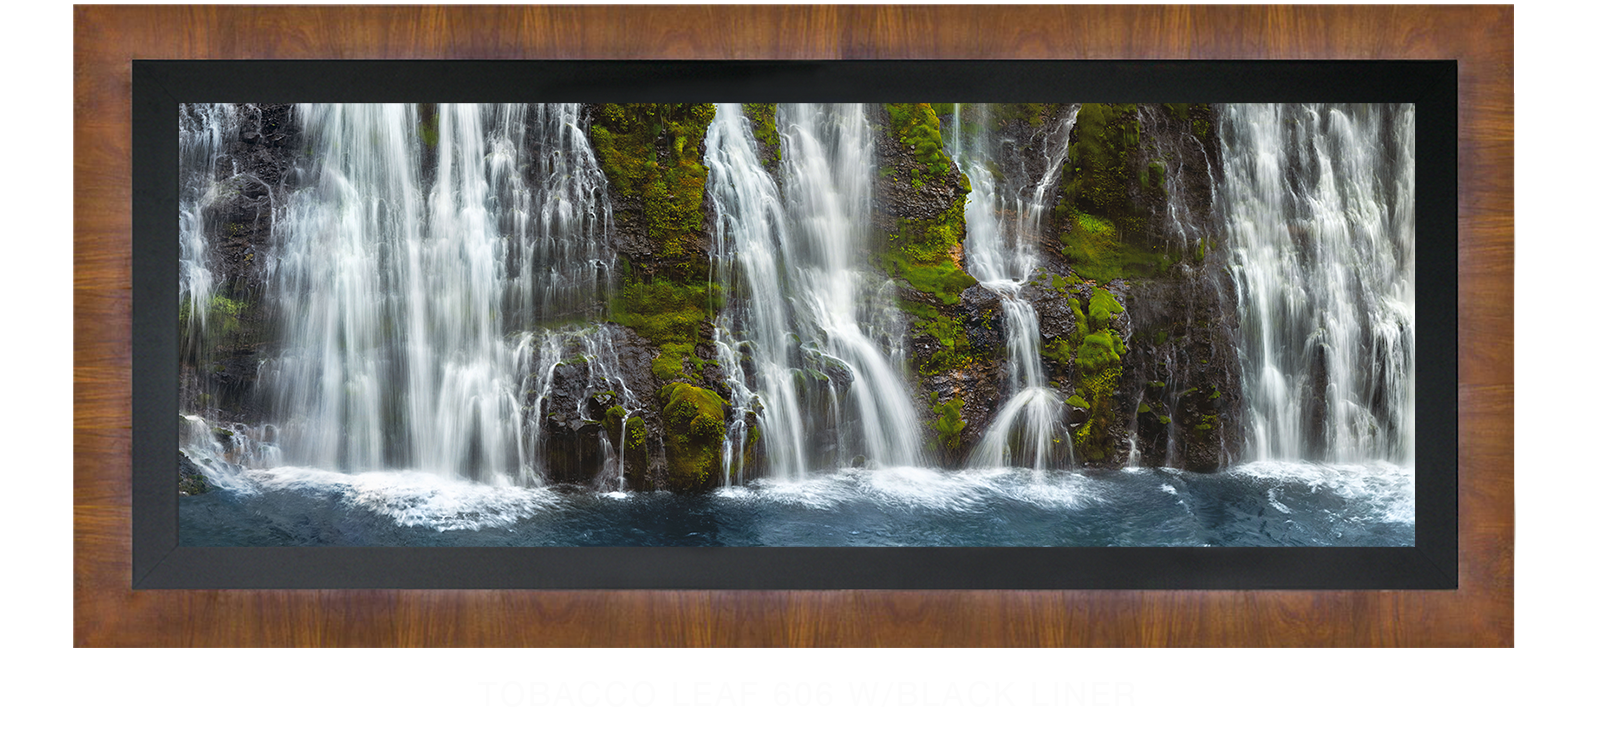 23_Tobacco Leaf 606 w_Blk Liner